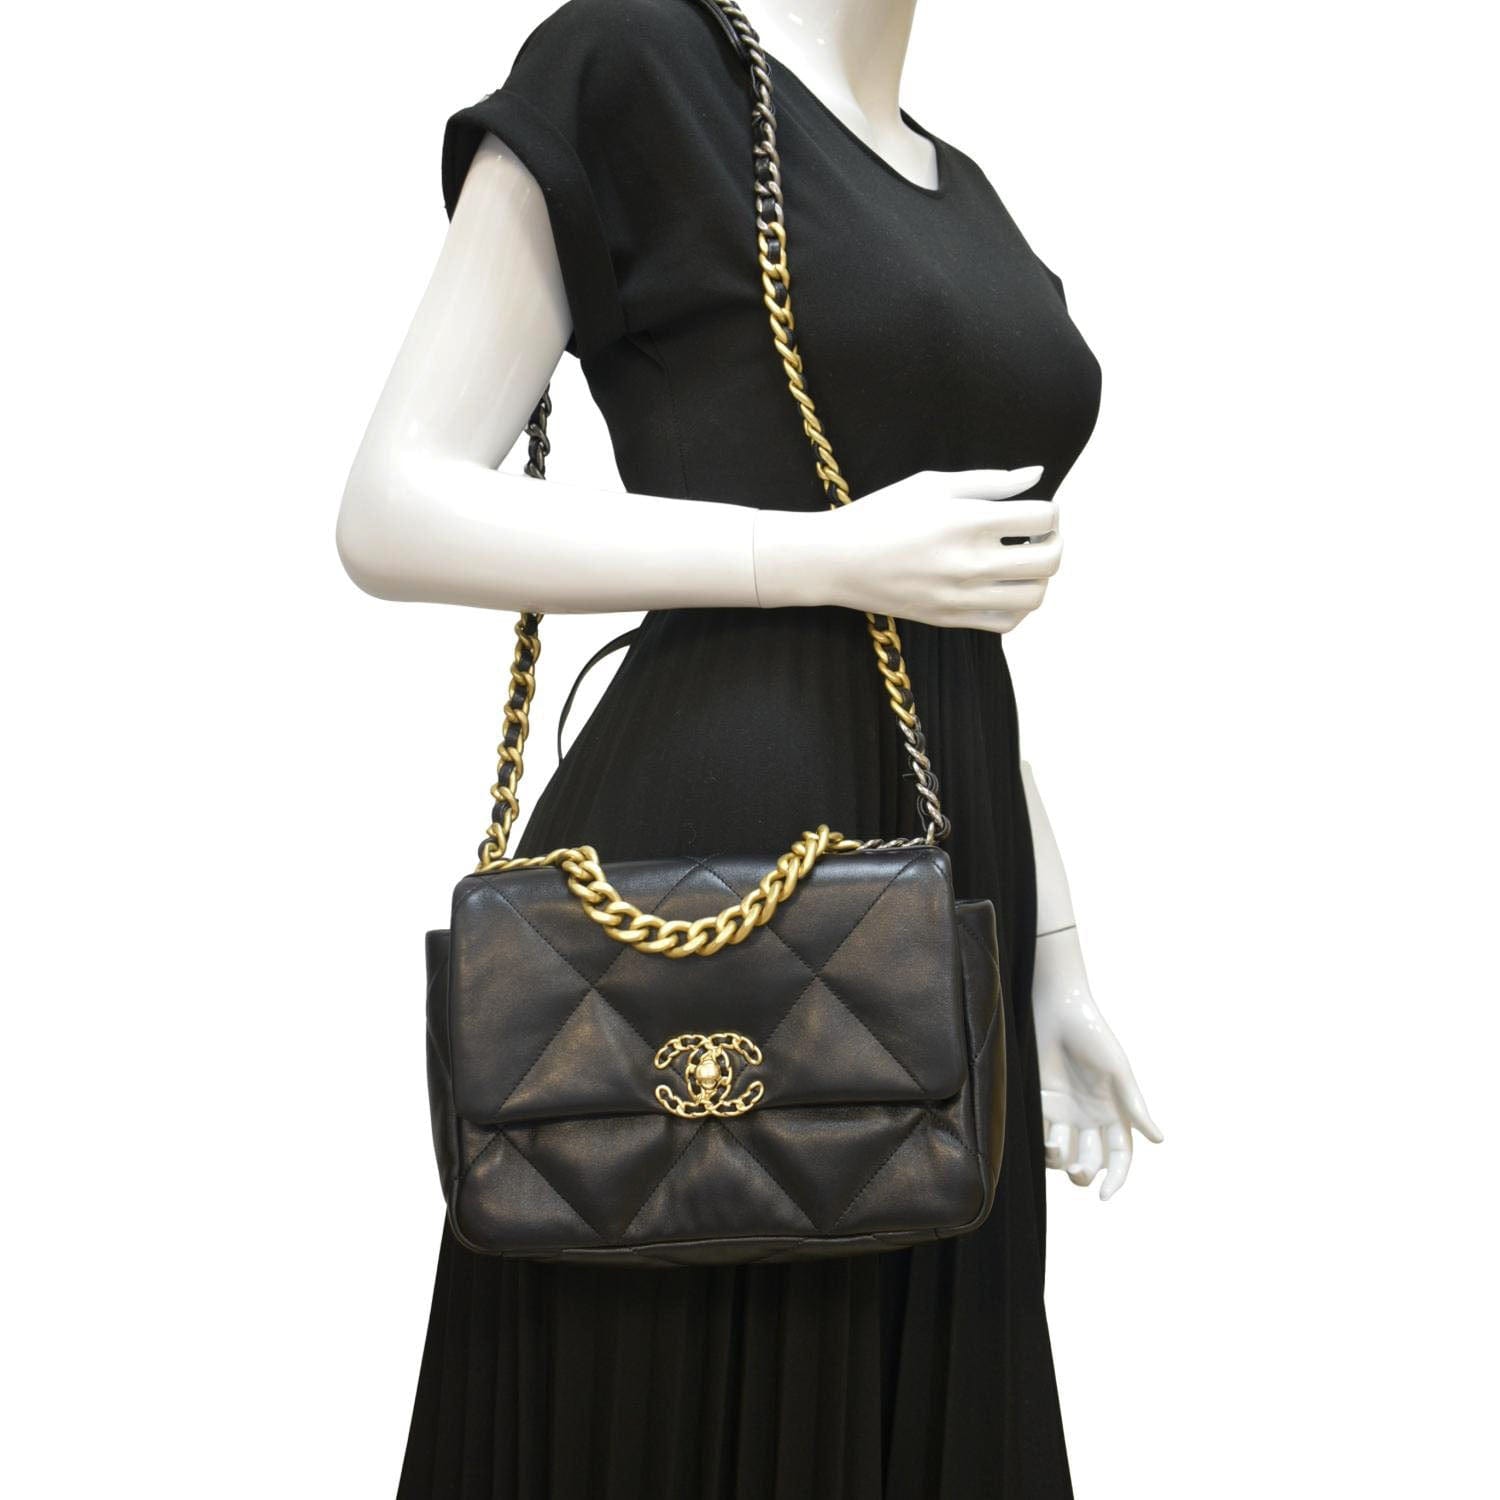 Chanel Chanel 19 Small Flap Bag in Black Lambskin | Dearluxe